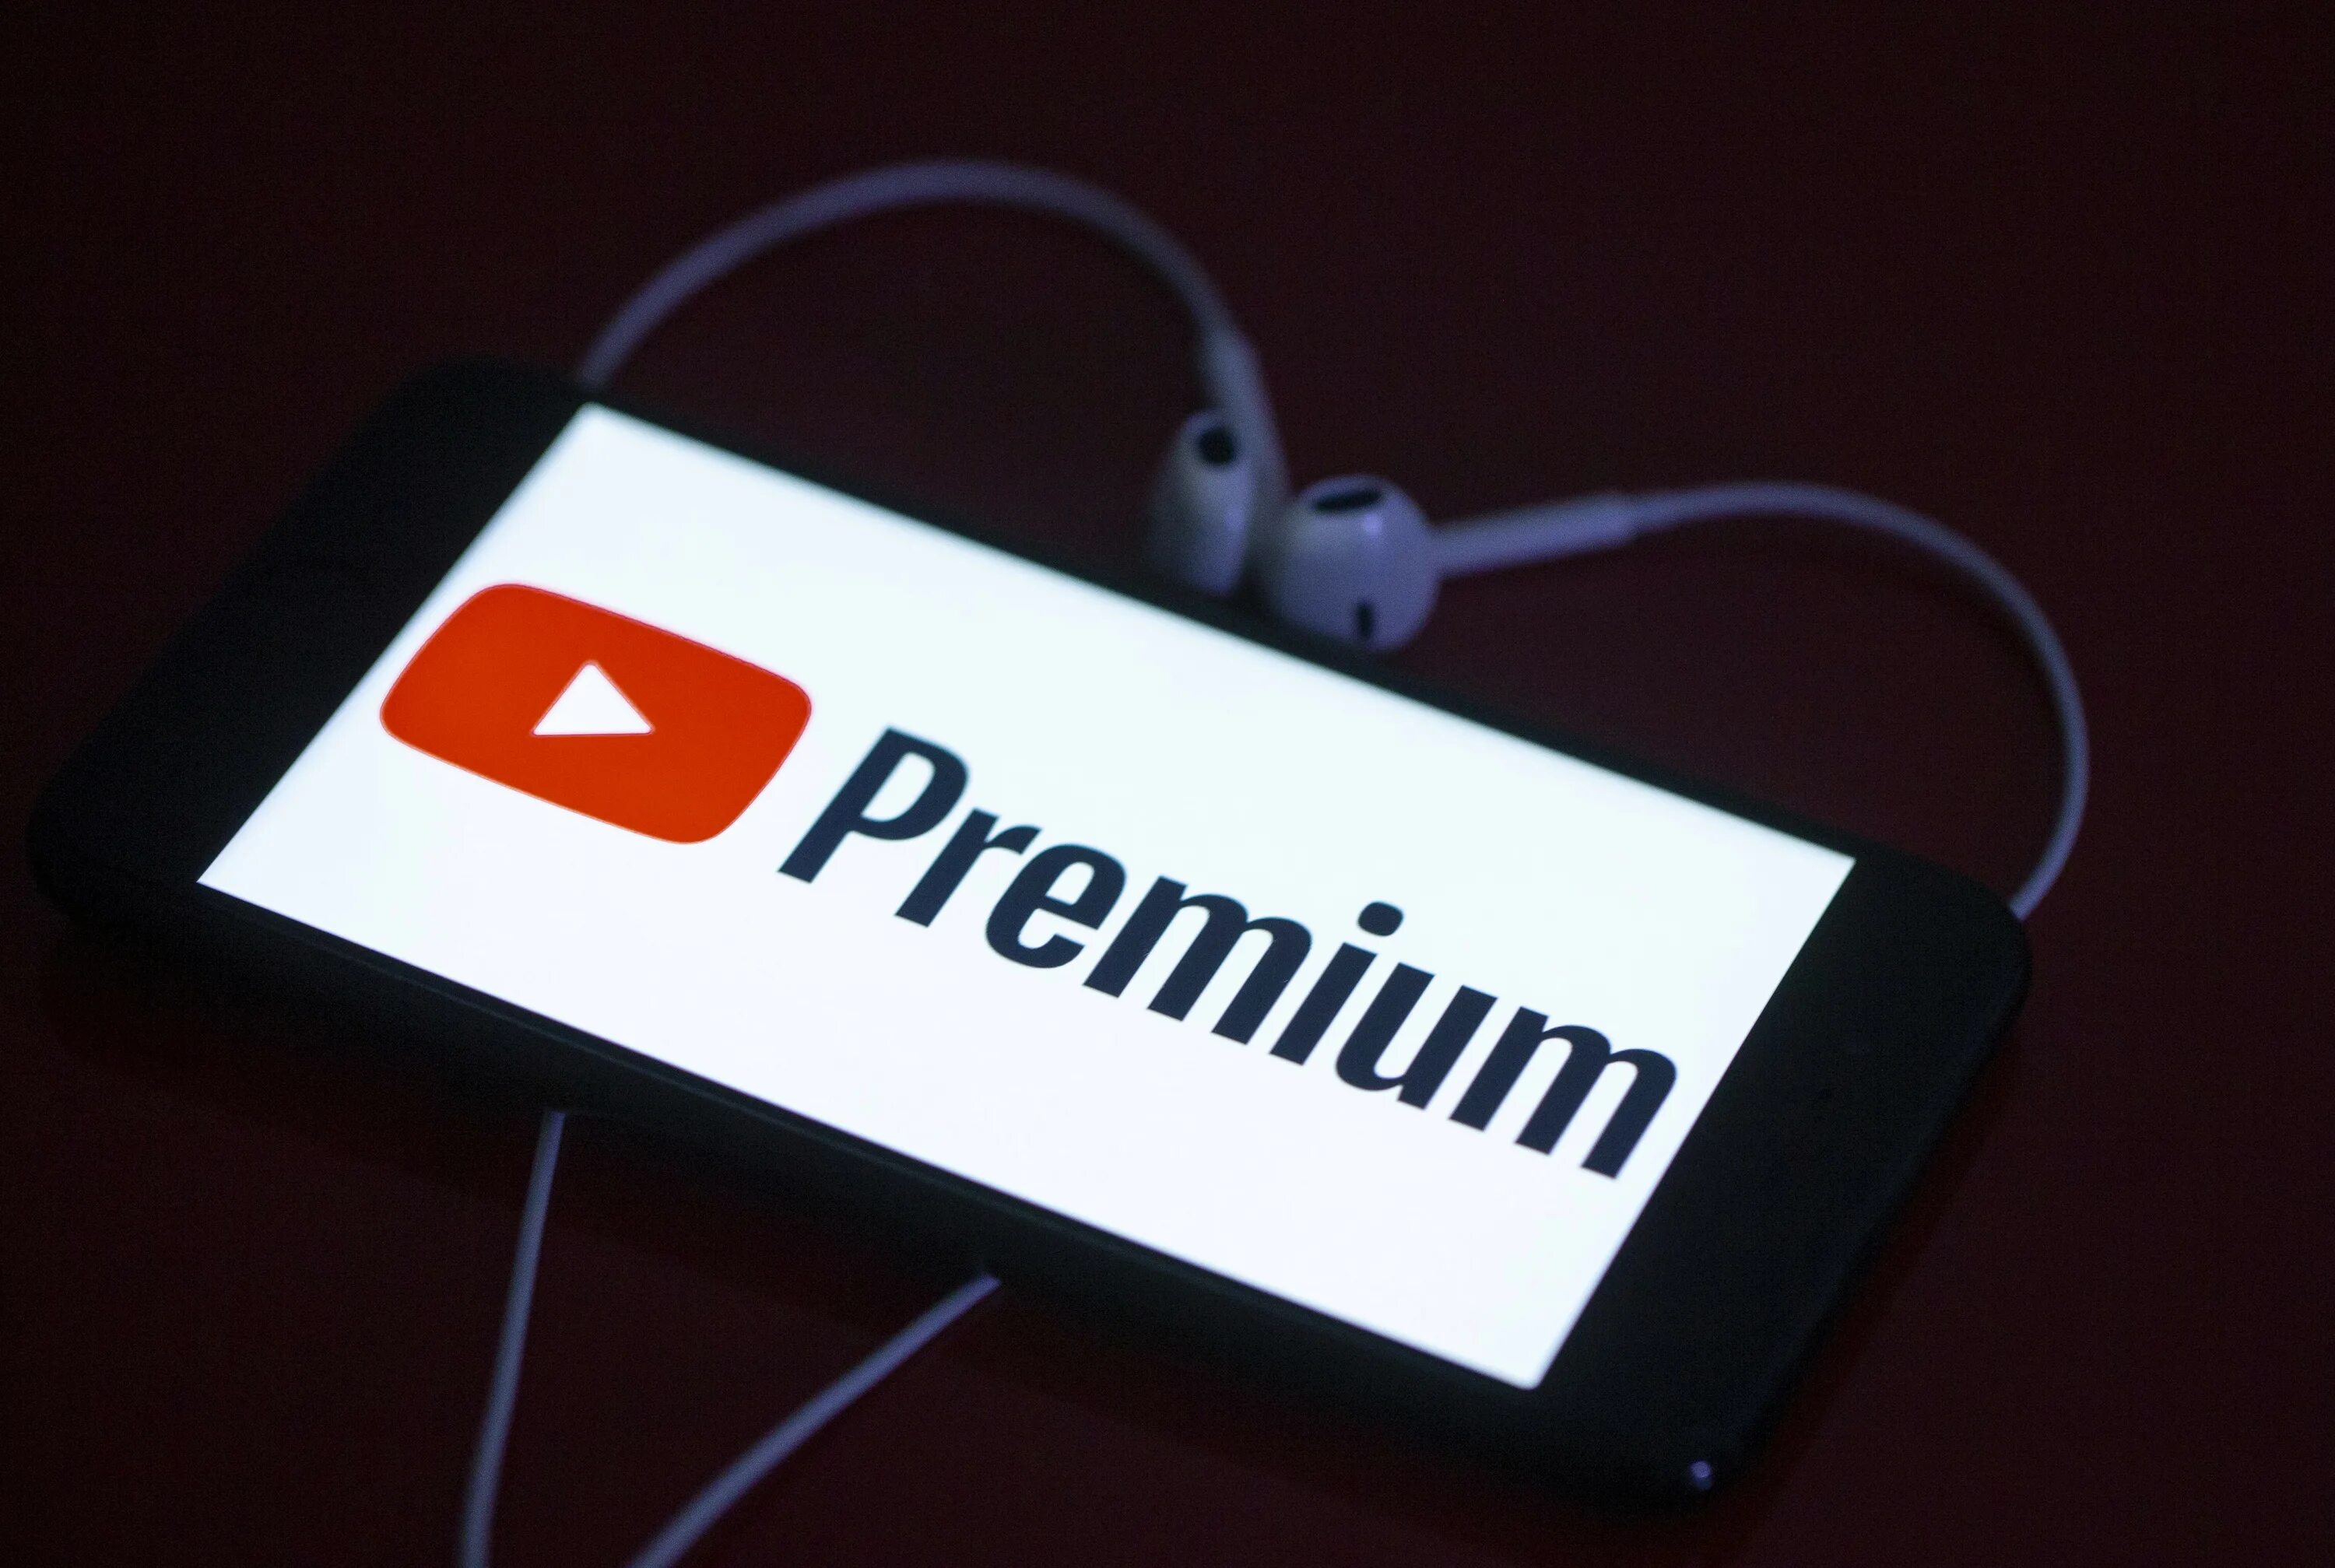 Youtube Premium. Ютуб премиум. Ютуб премиум картинка. Подписка youtube Premium. Youtube client